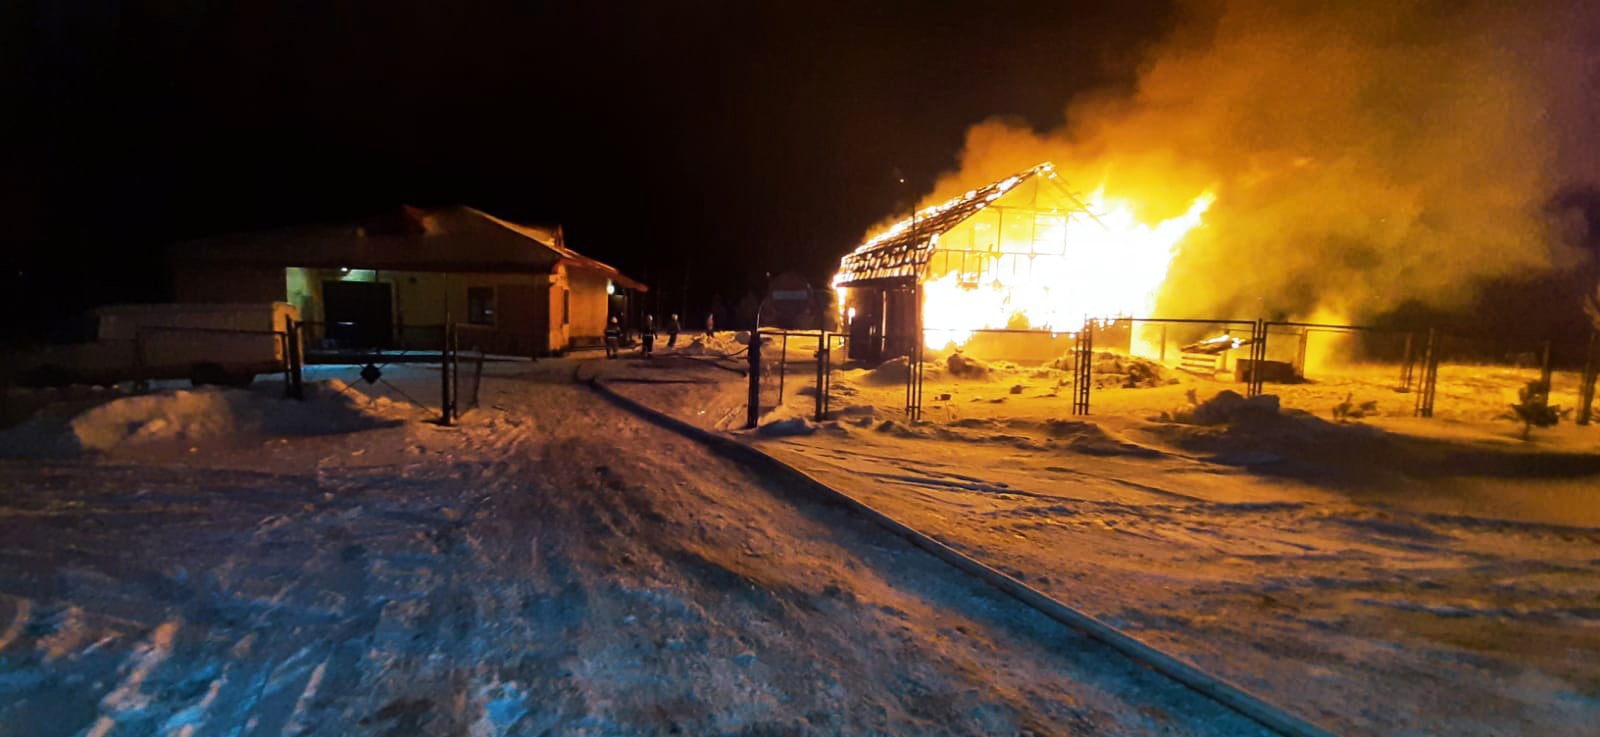 19 января в деревне Ращеп в Новгородском районе сгорела крупная хозяйственная постройка. (фото)